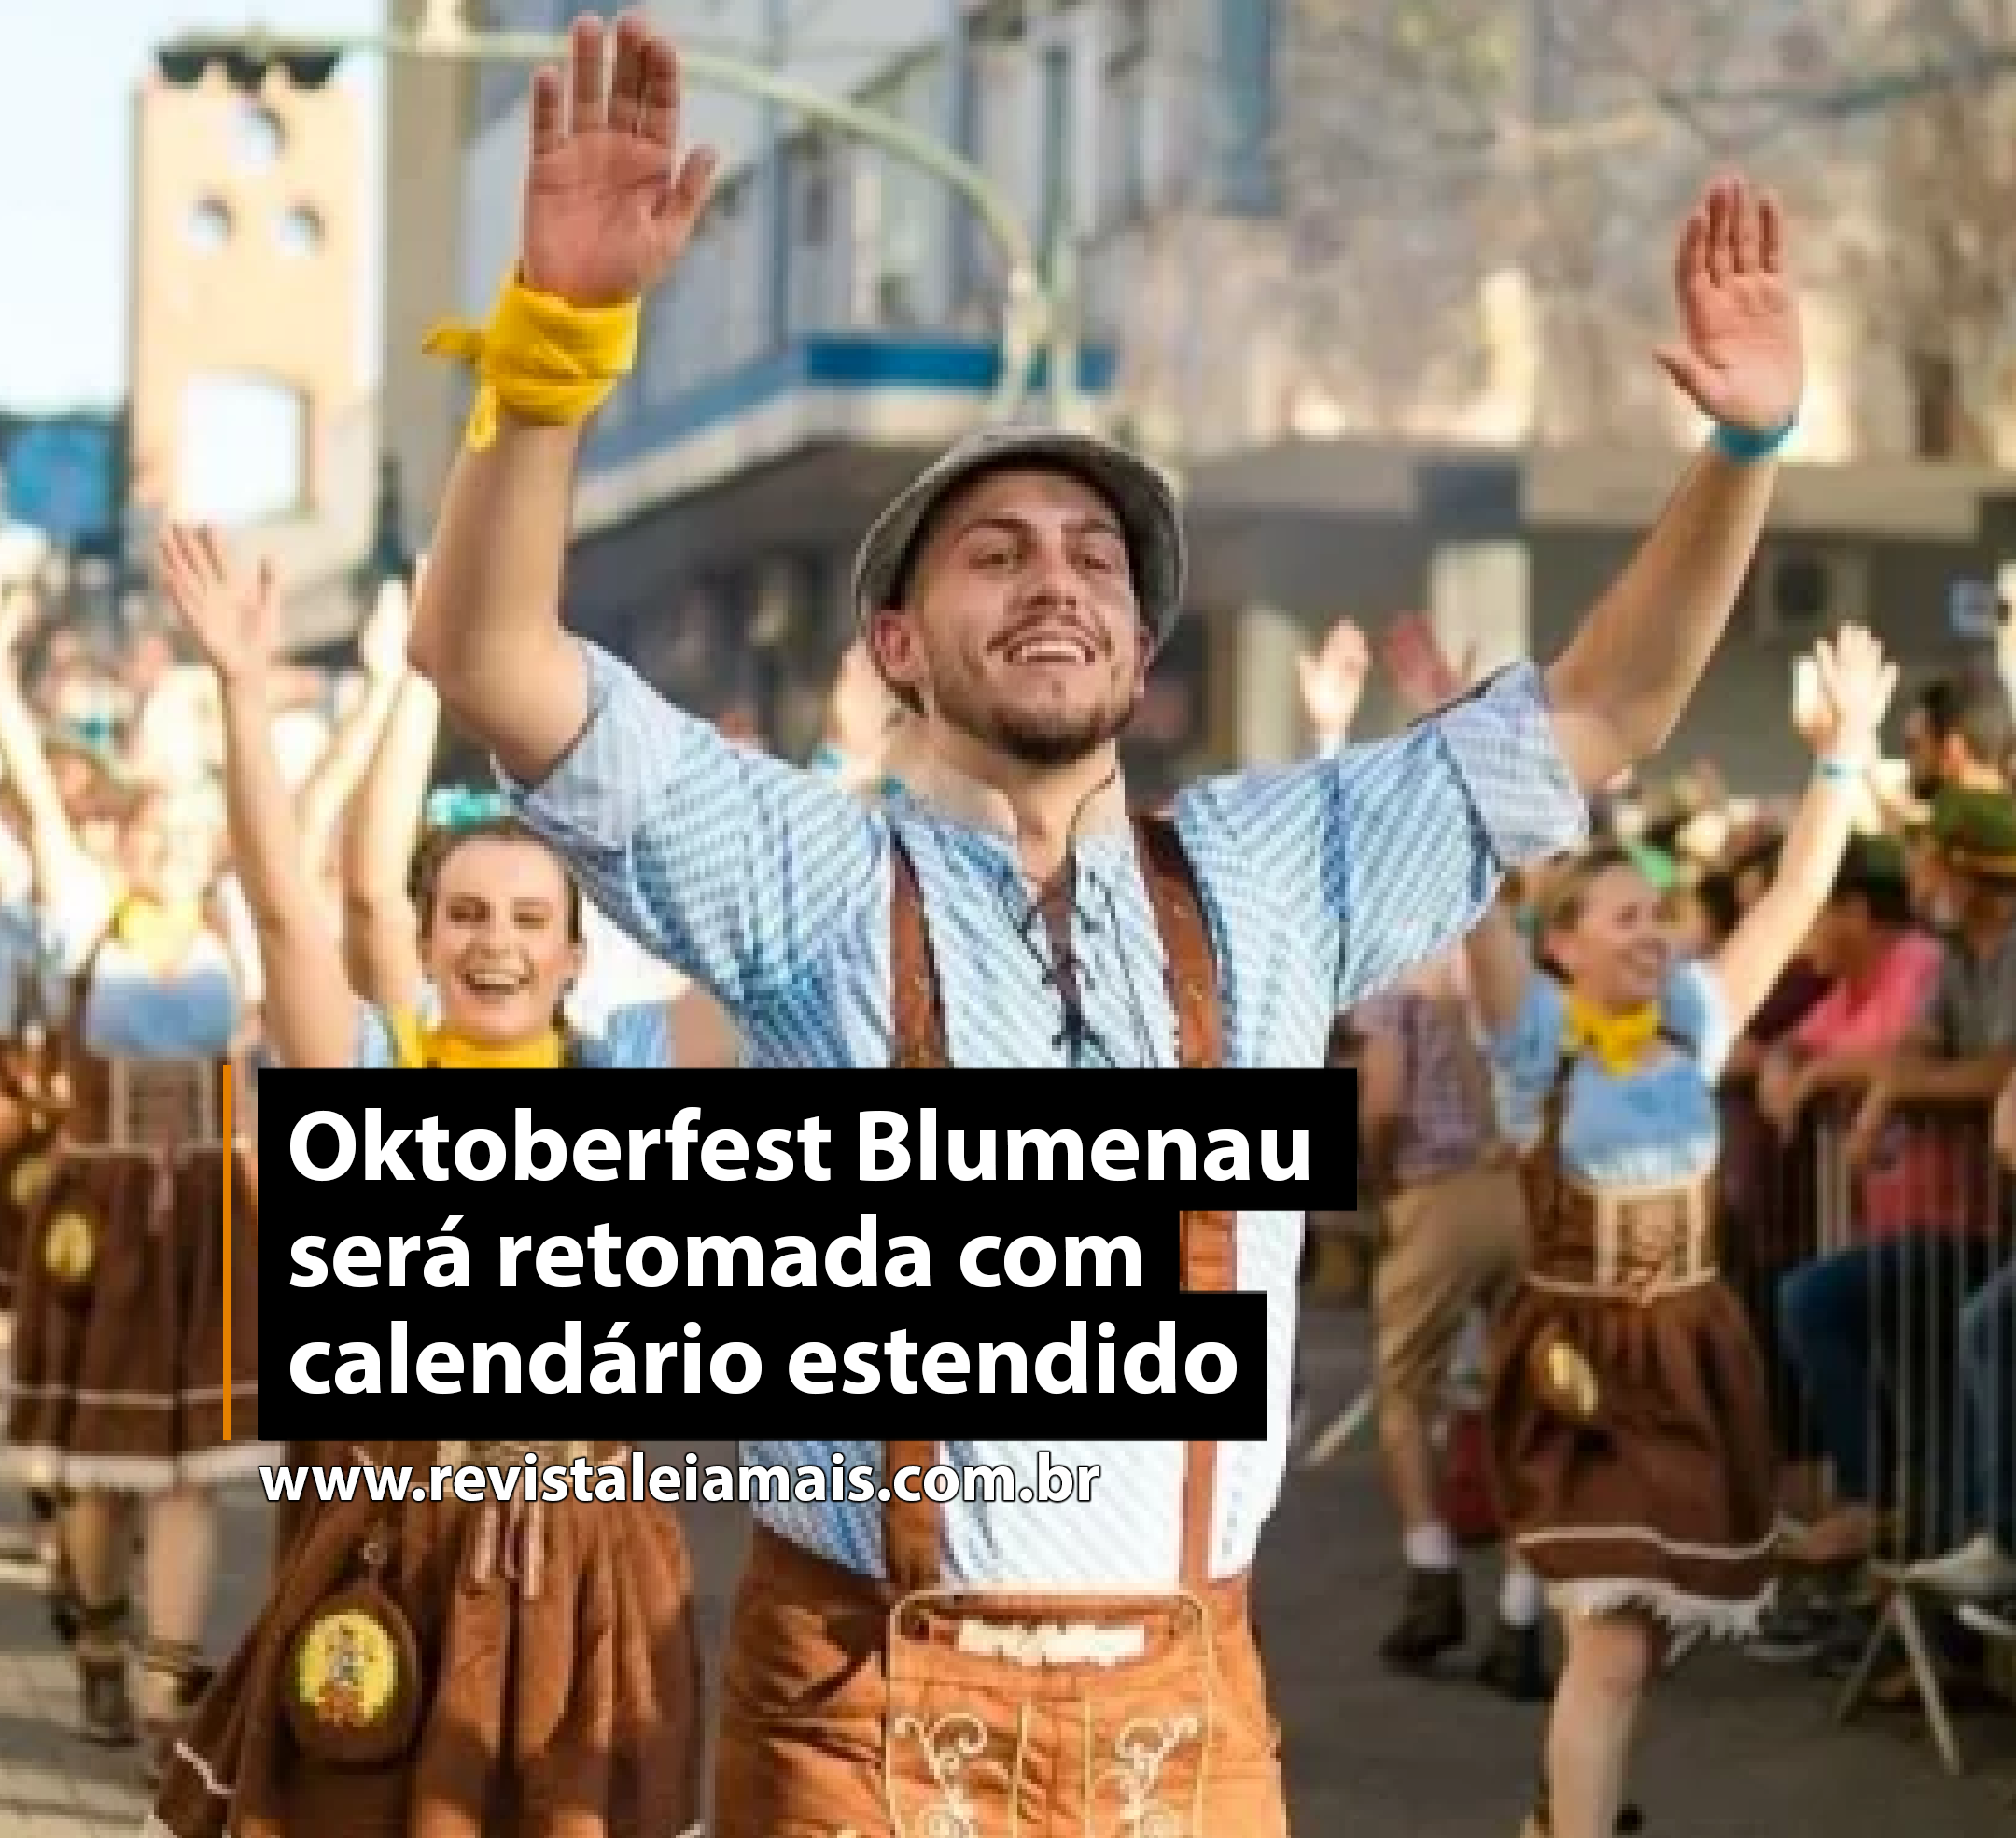 Oktoberfest Blumenau será retomada com calendário estendido